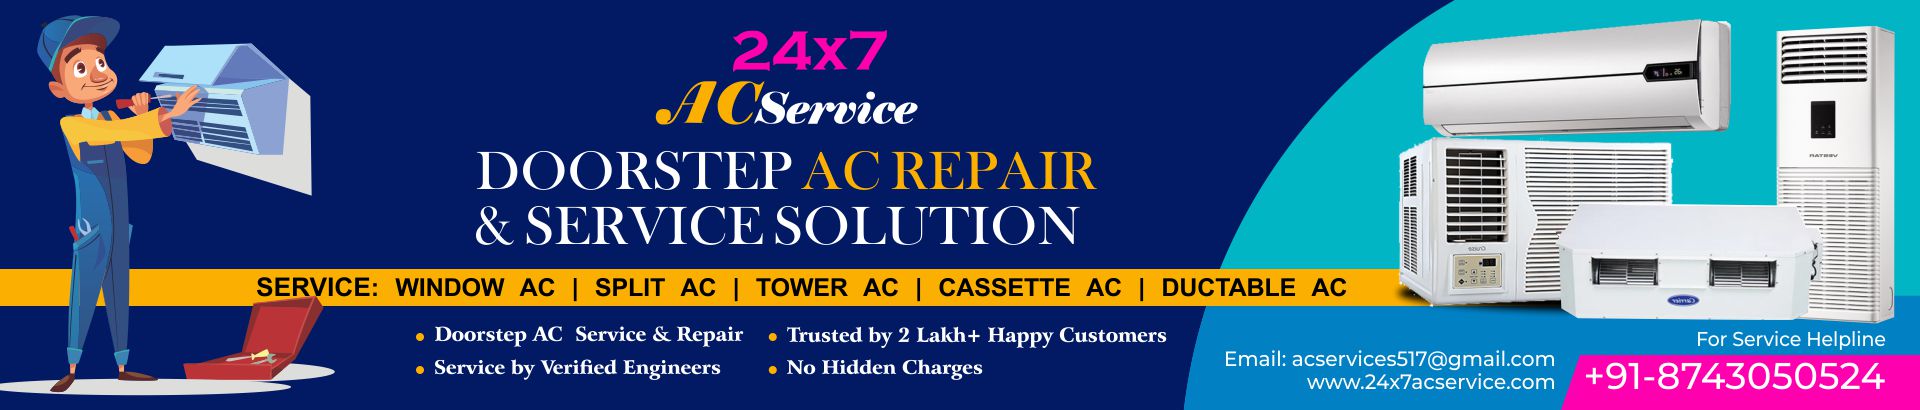 AC repair and service in Keshav Puram Delhi